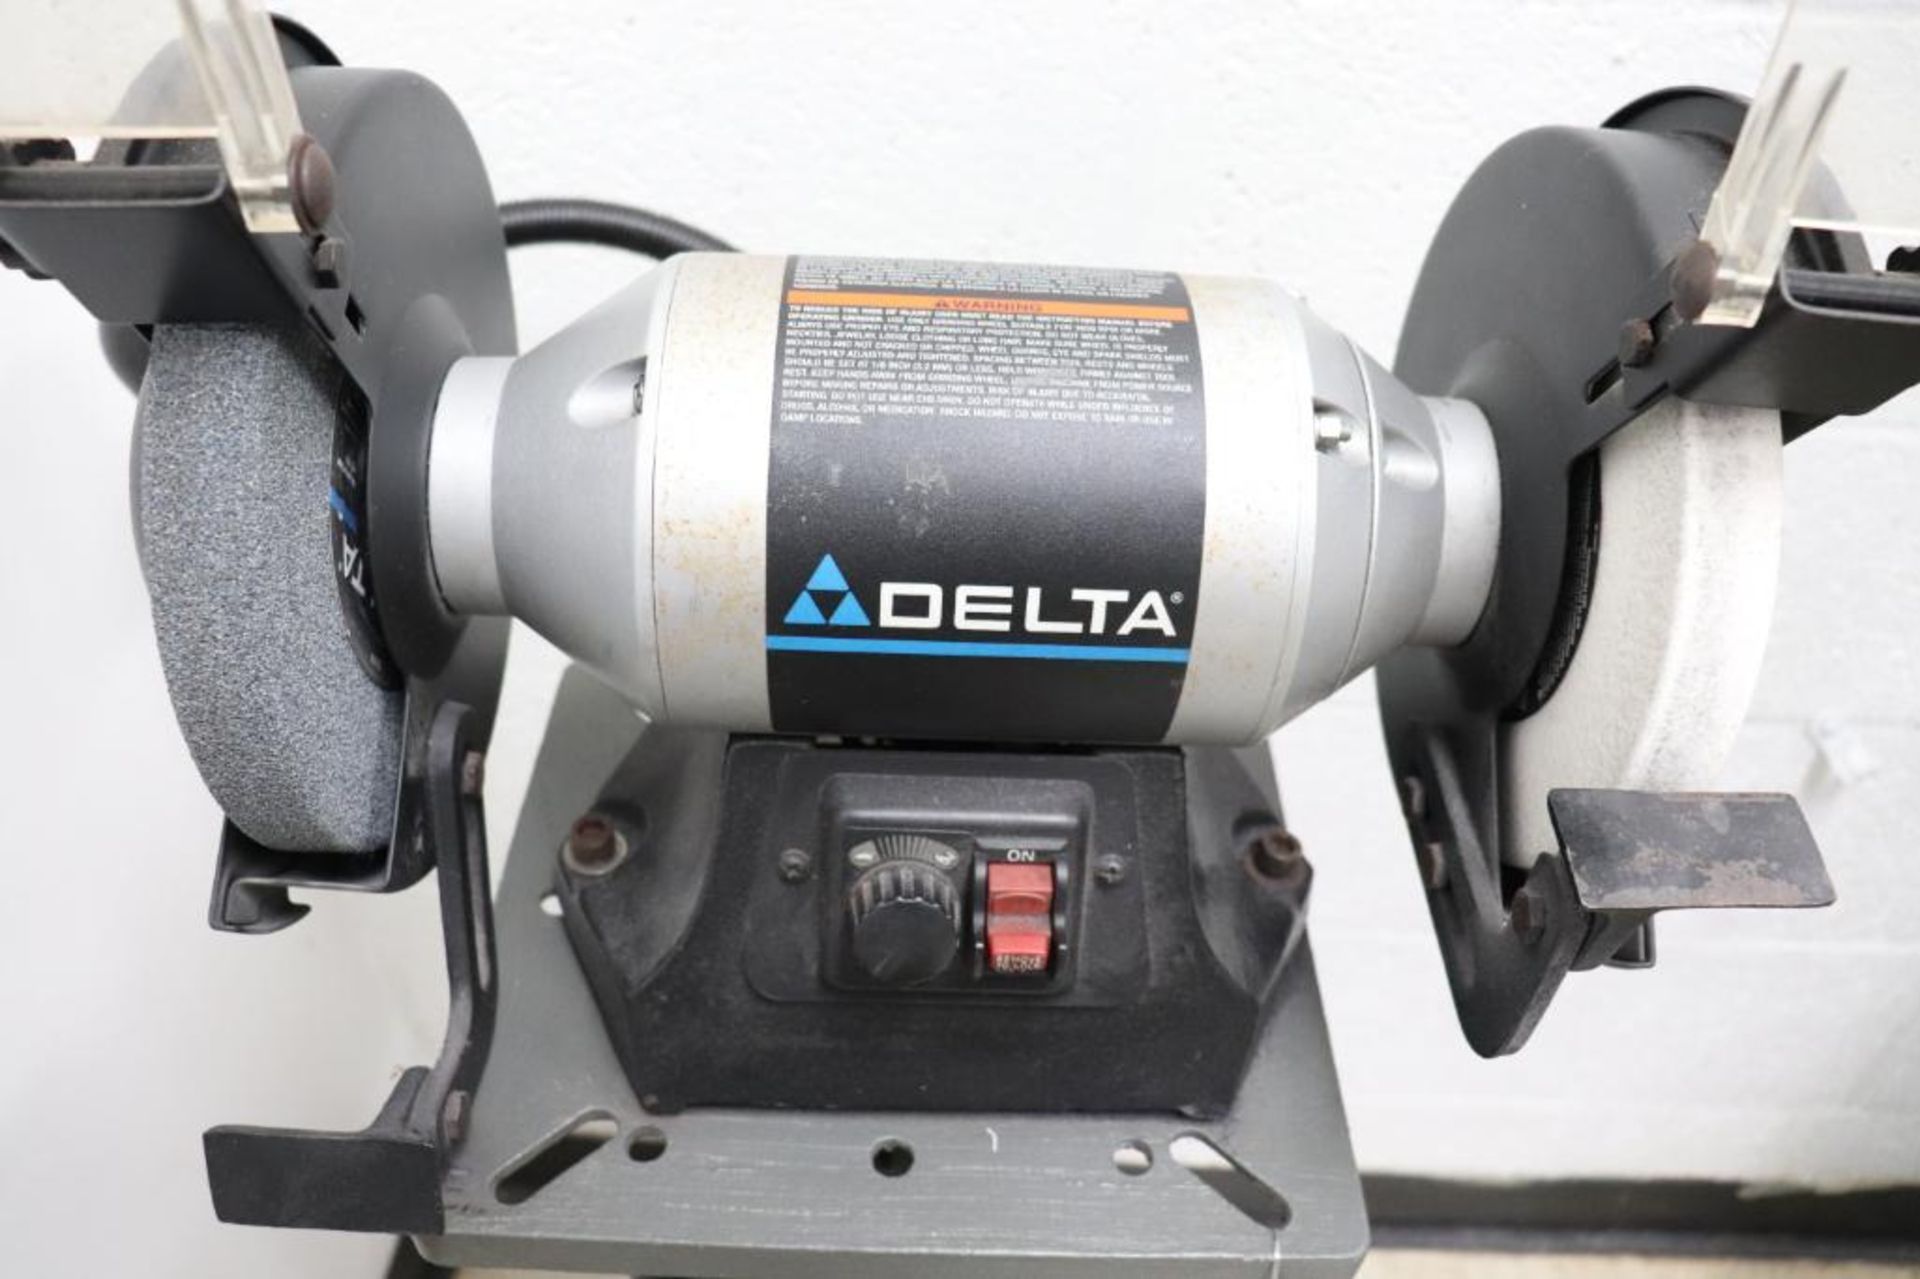 Delta pedestal grinder - Image 2 of 2